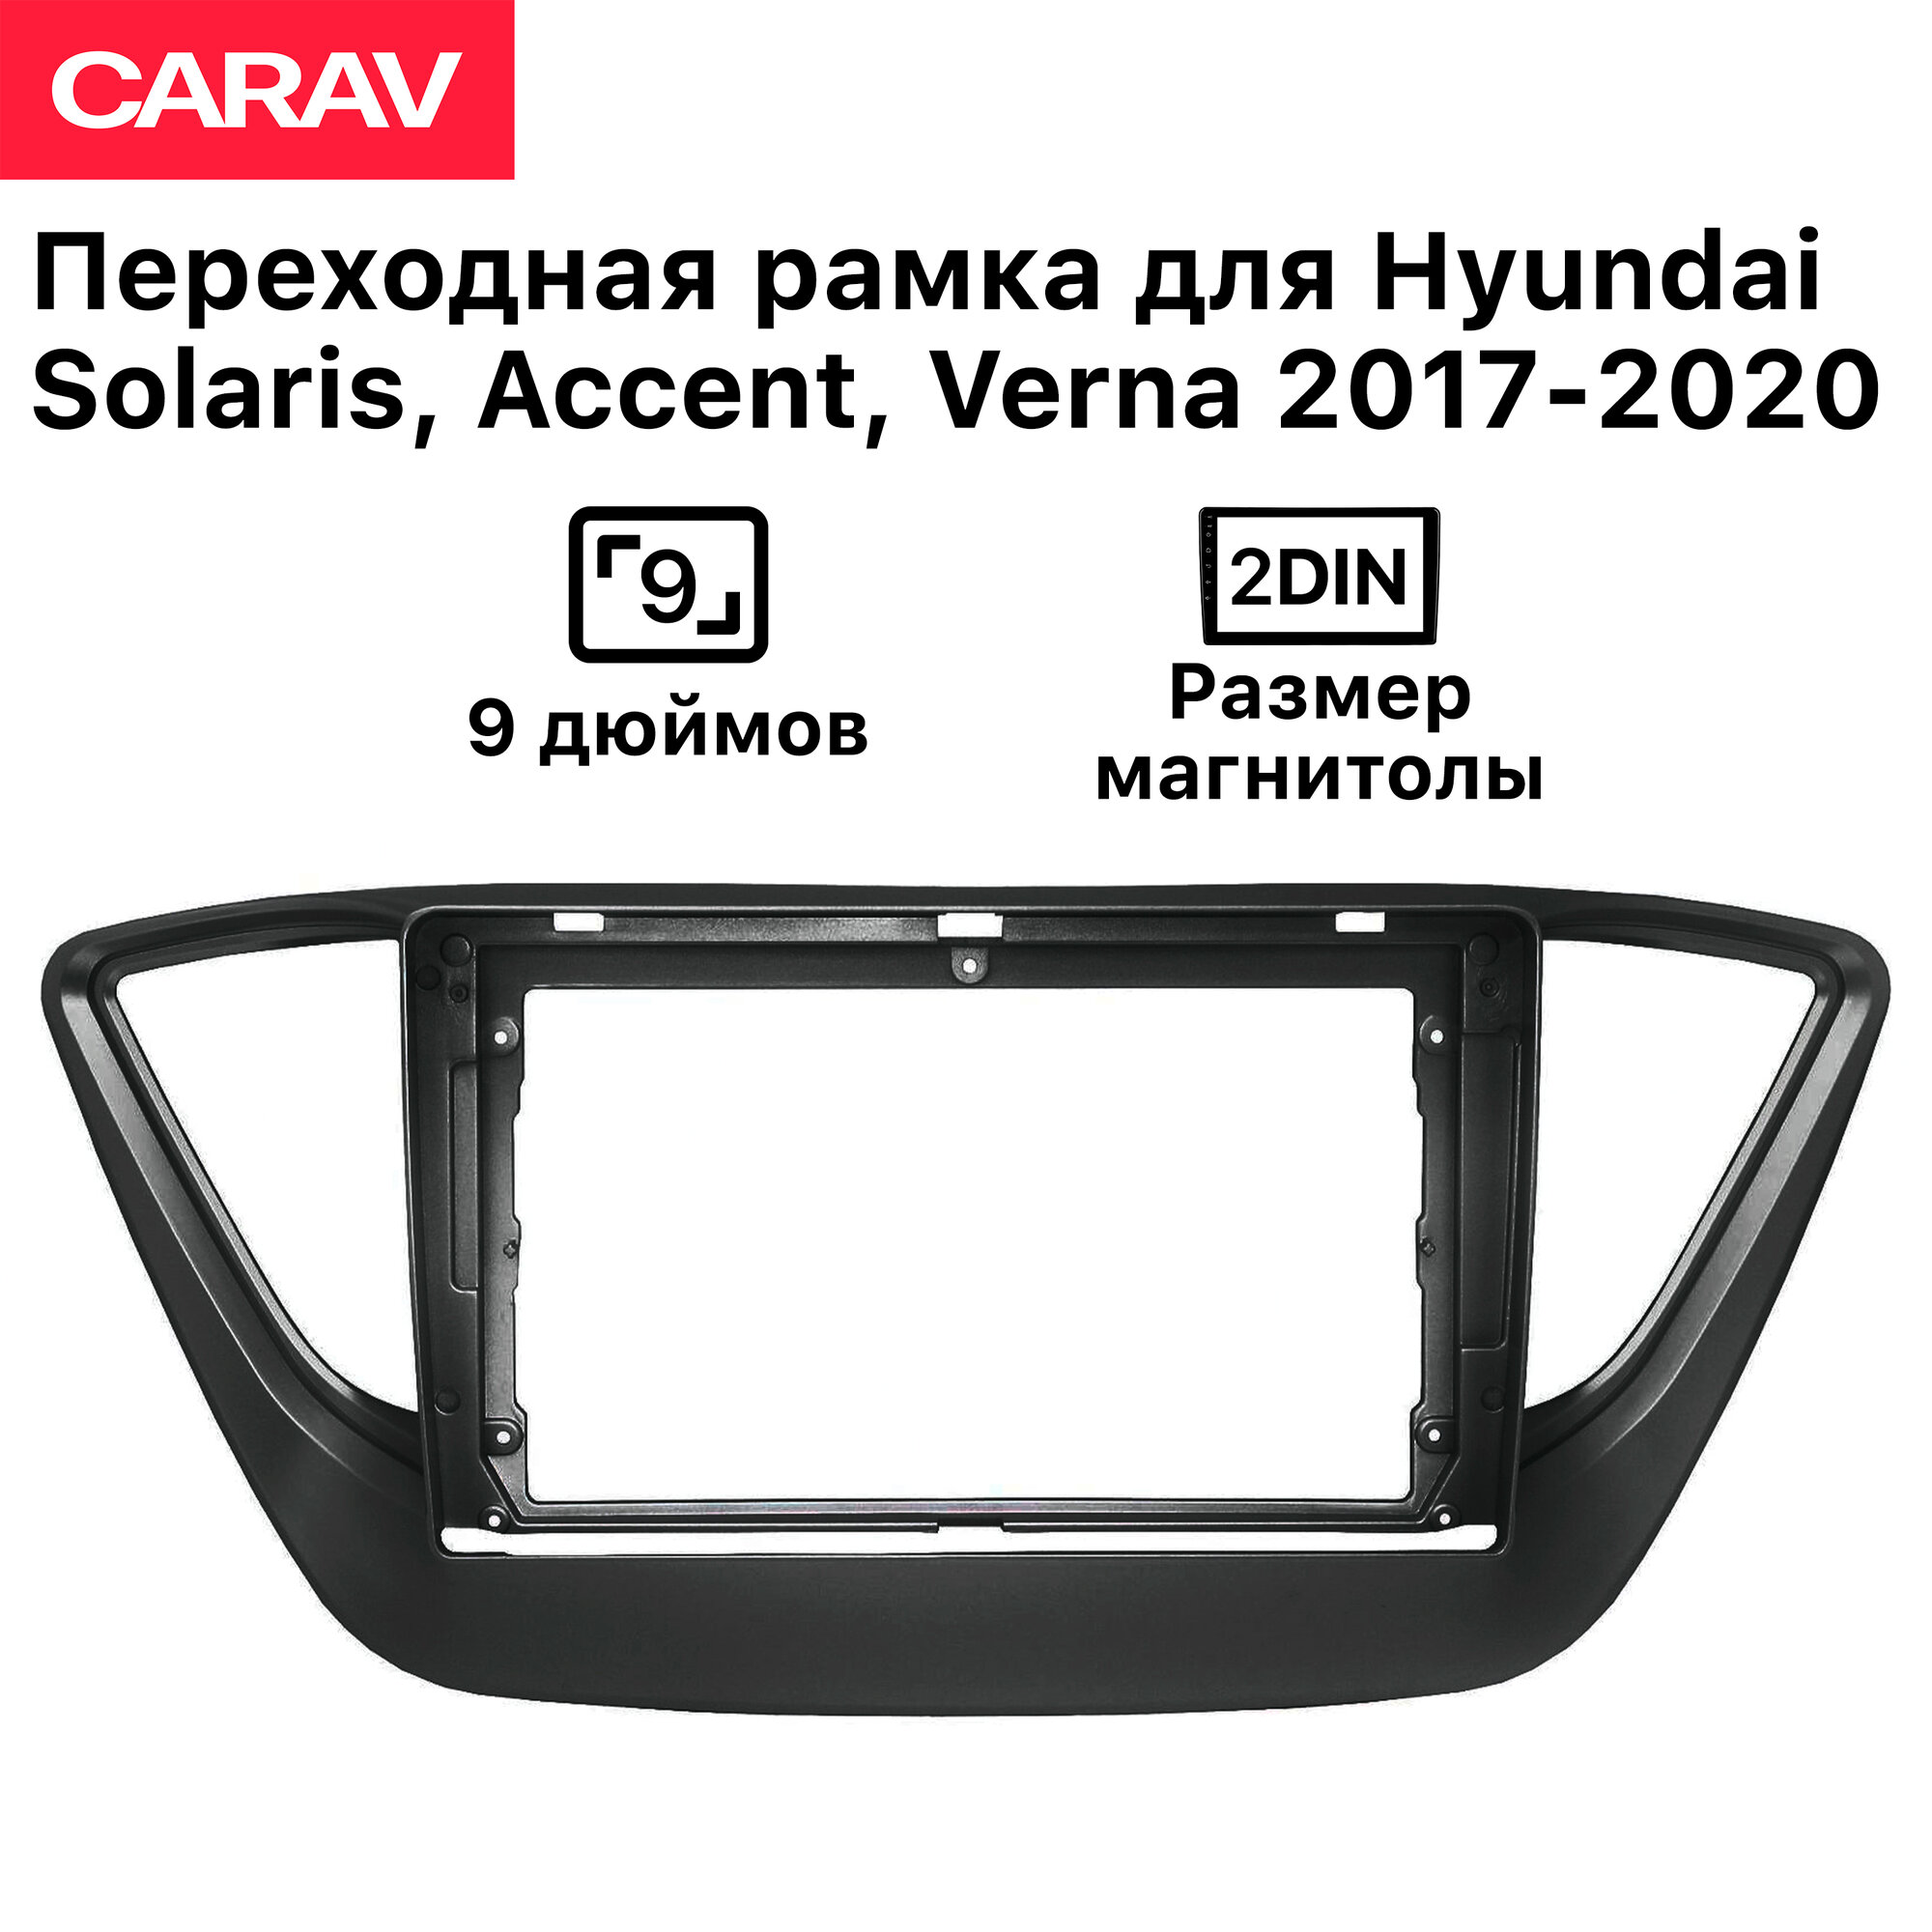 Рамка Carav для магнитолы 2din для Hyundai Solaris, Verna 2017-2020, Accent 2017+, 9 дюймов, Черная